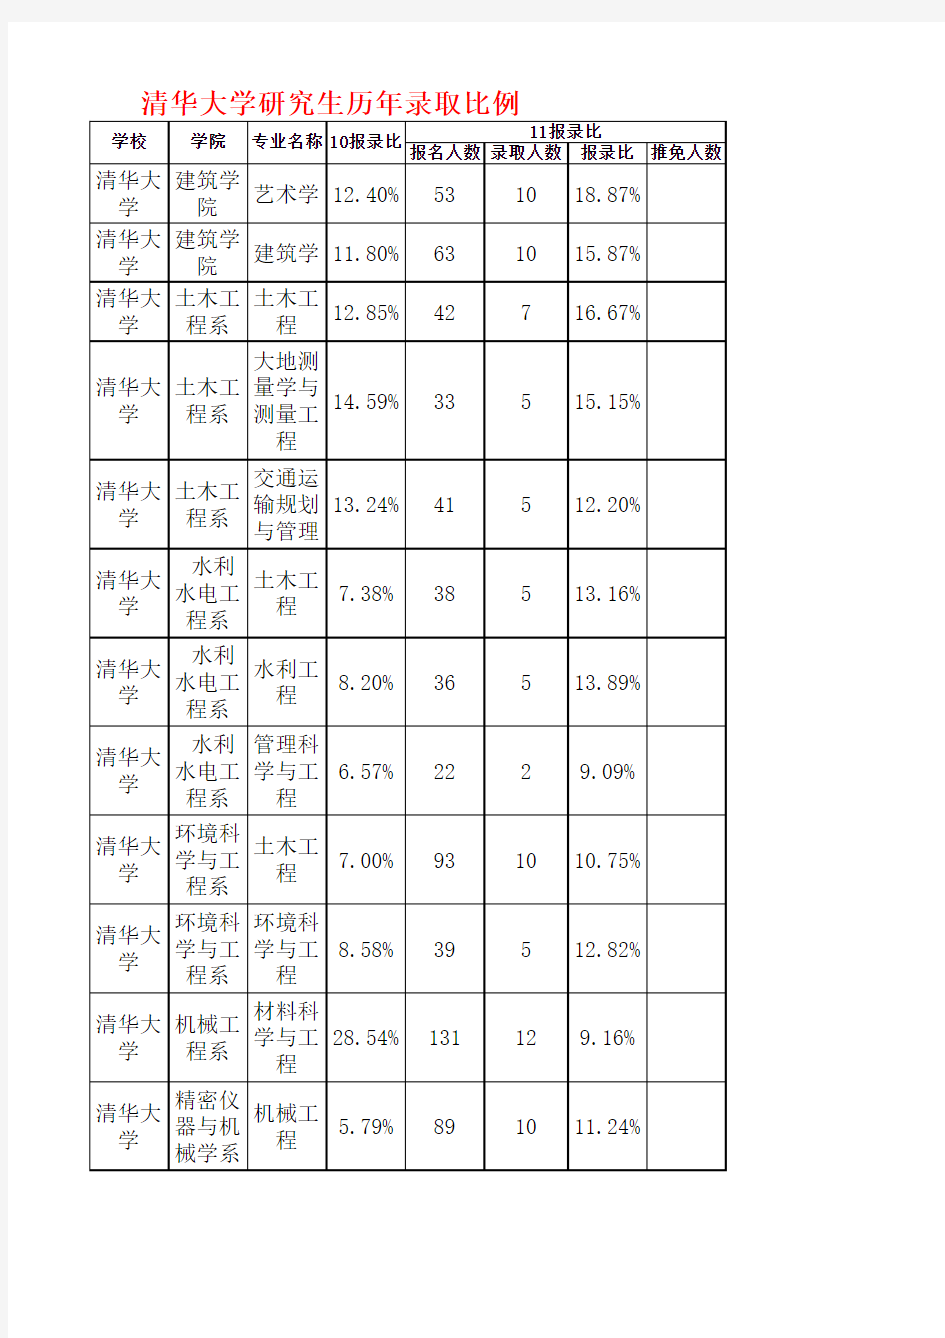 清华大学研究生2010-2011年录取比例